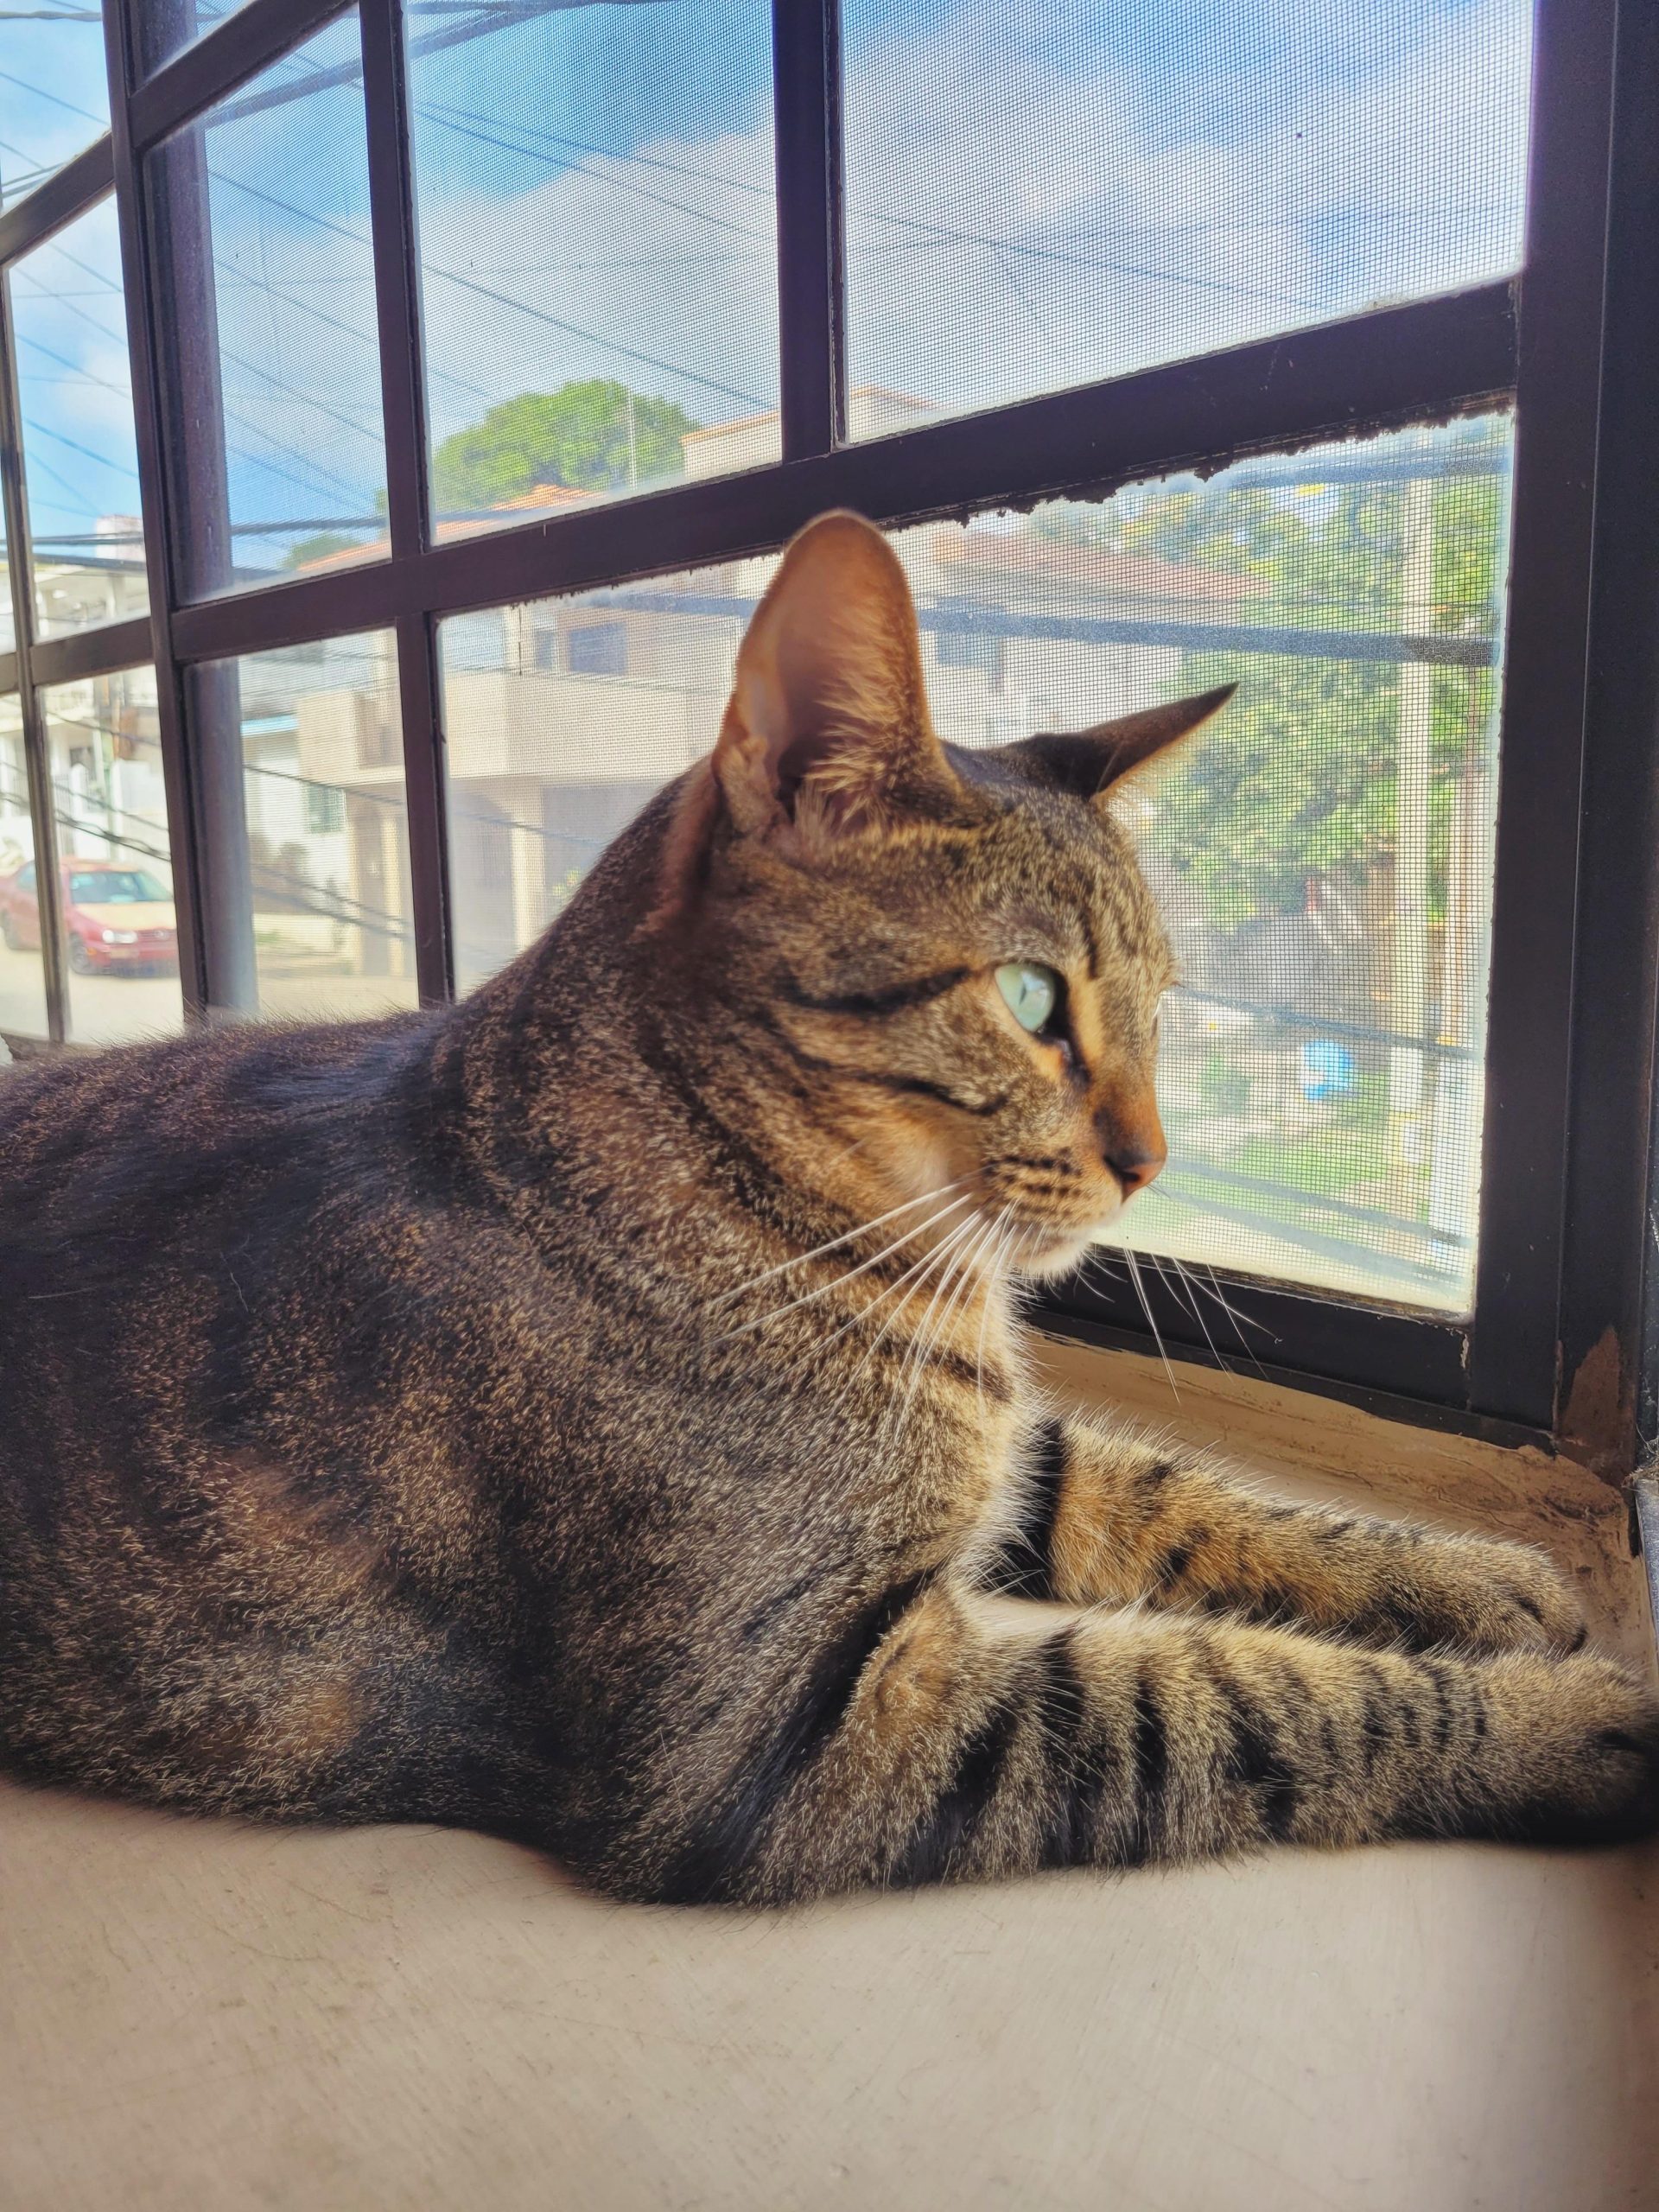 Meet Figaro